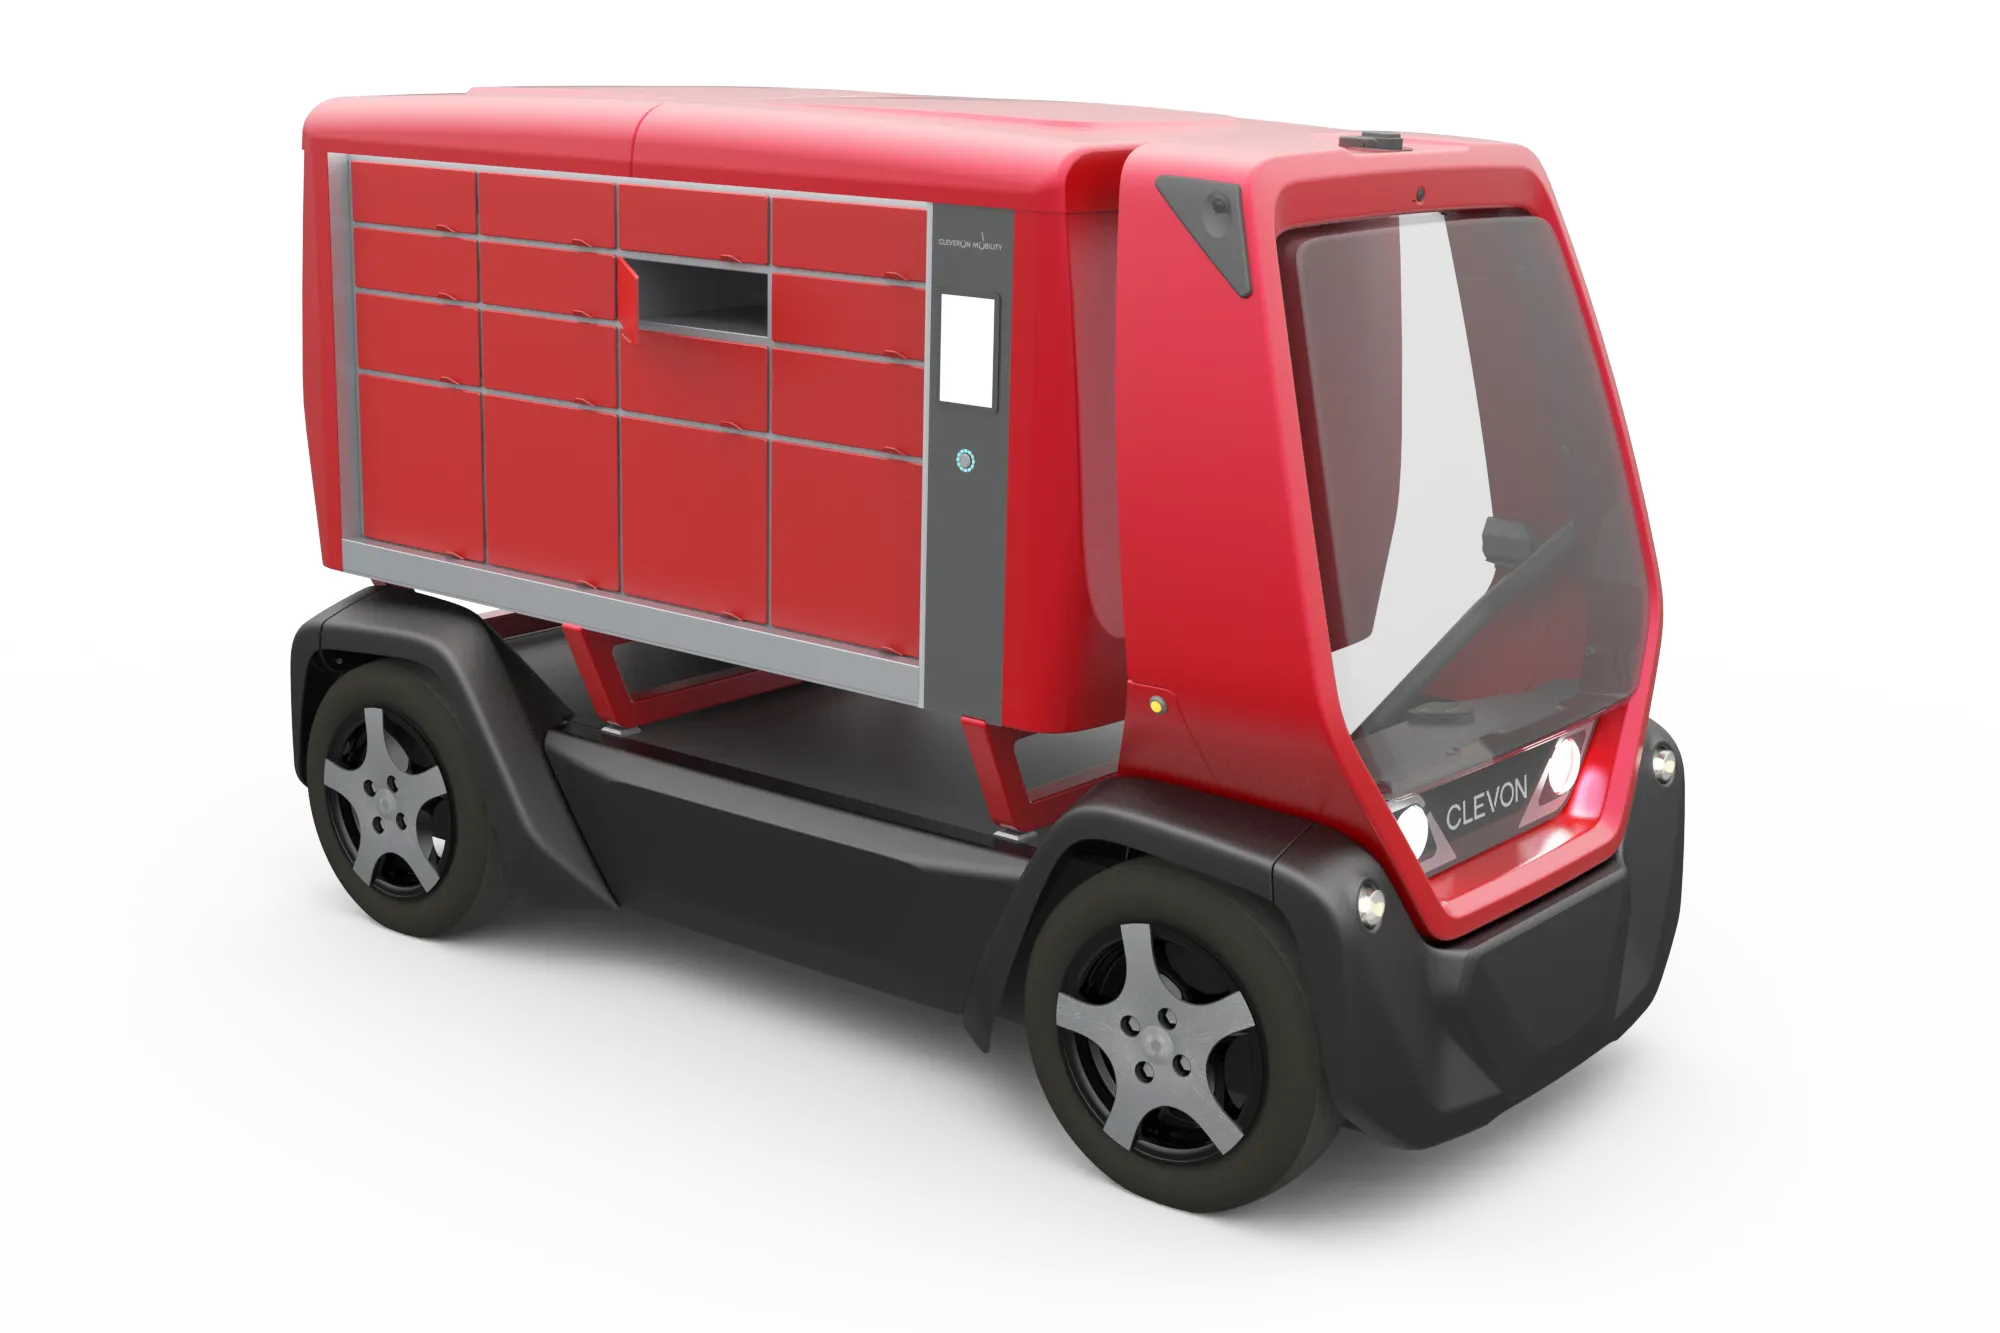 CLEVON 1 autonomous platform vehicle with parcel locker